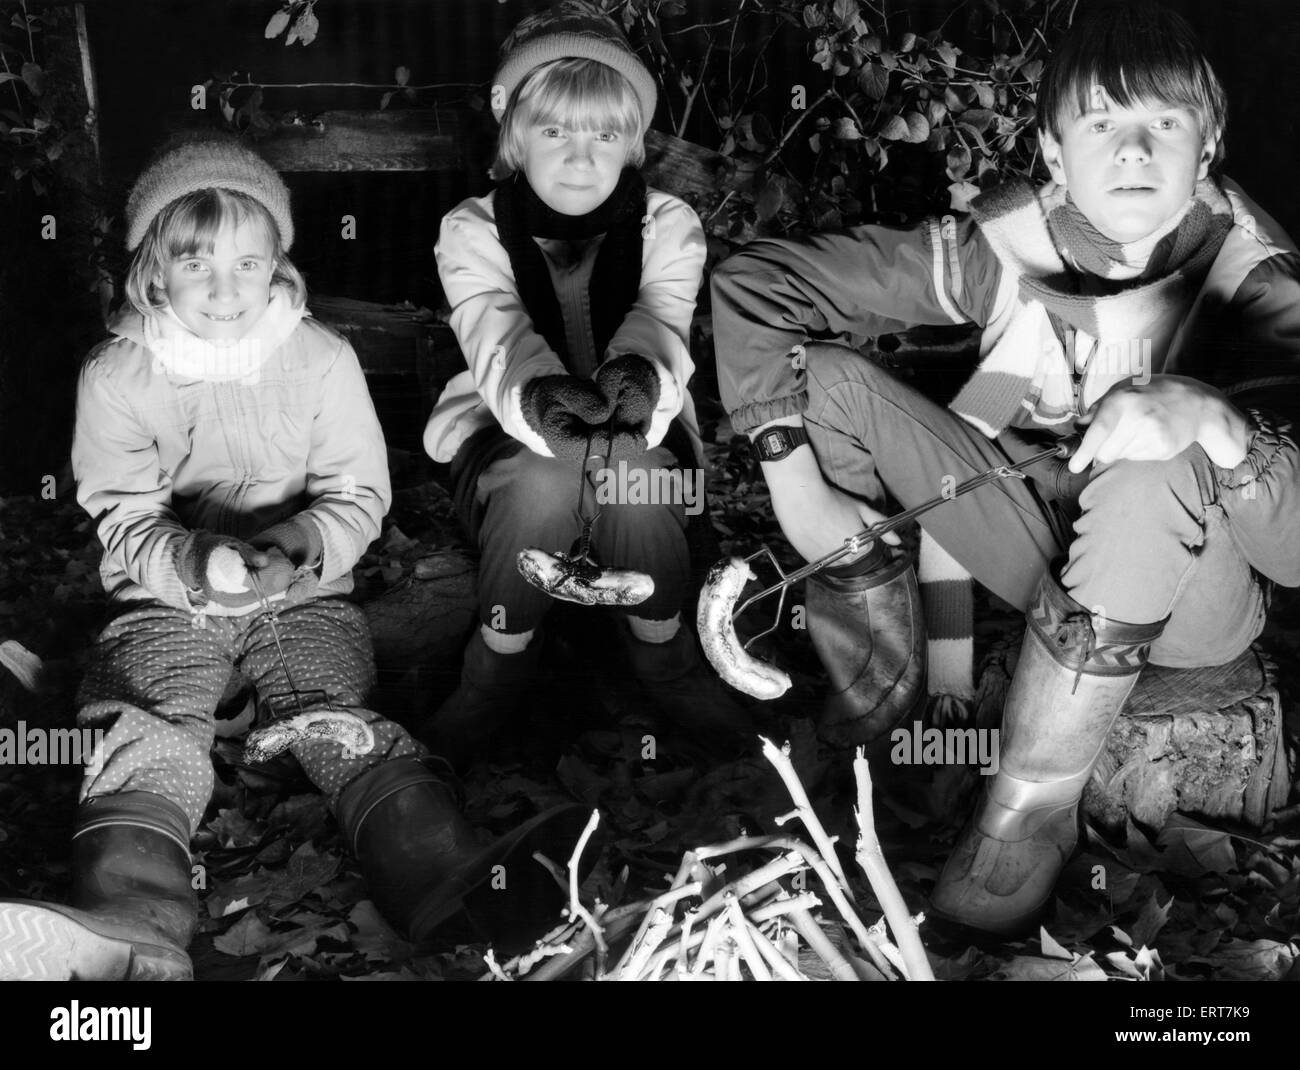 La fogata original noche banger. Niños en una hoguera de Merseyside privado noche parte cocinar salchichas en el fuego. El 05 de noviembre de 1985 Foto de stock